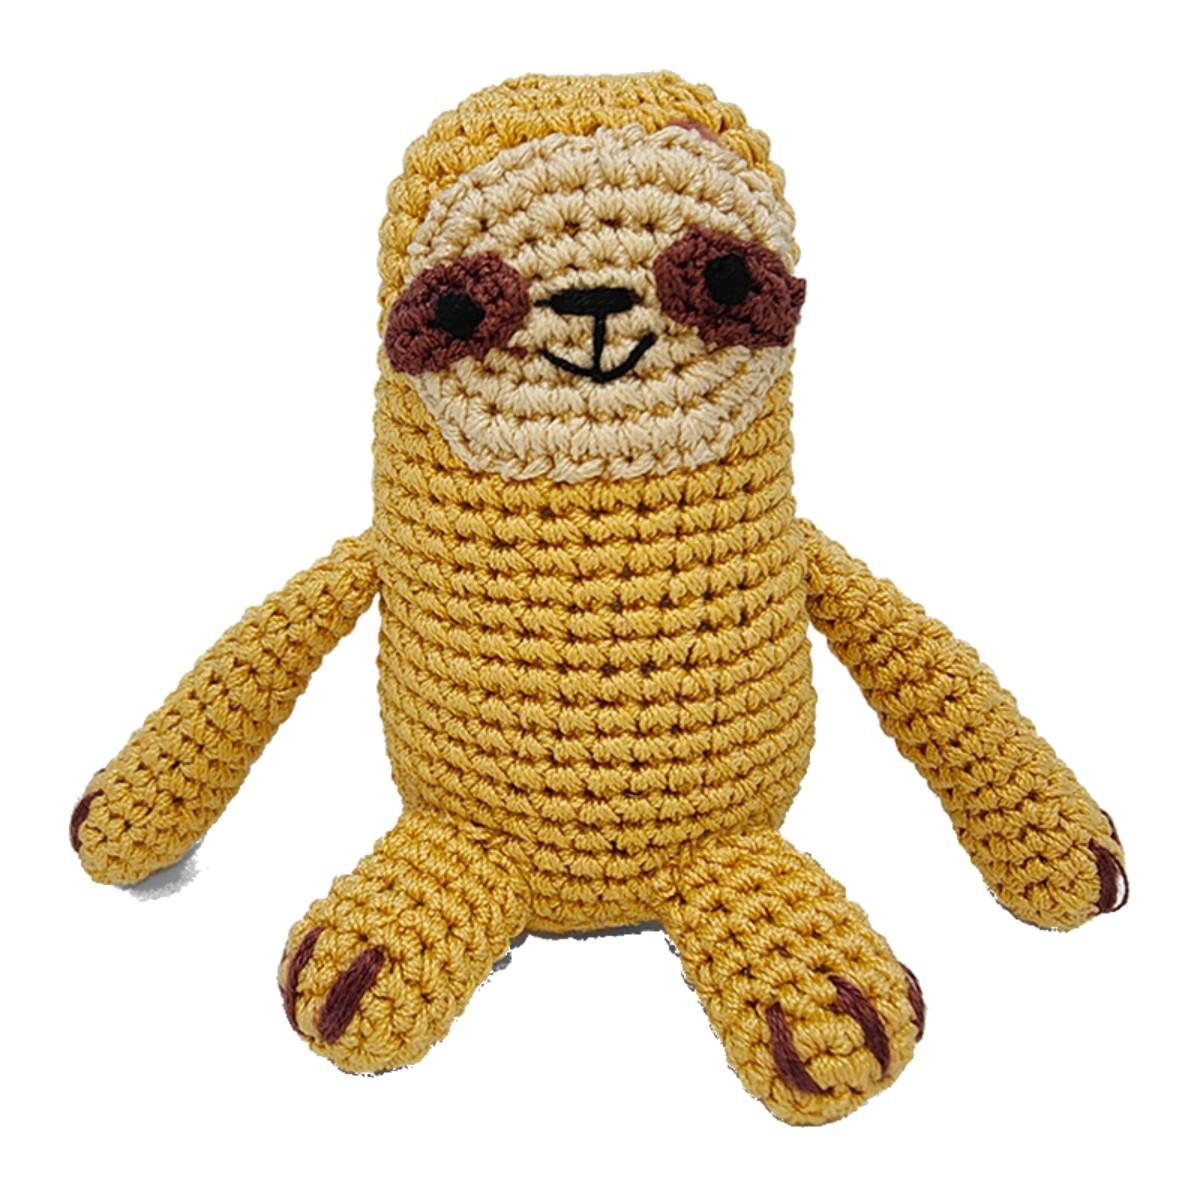 DOGO PAWer Crochet Dog Toy - Sloth